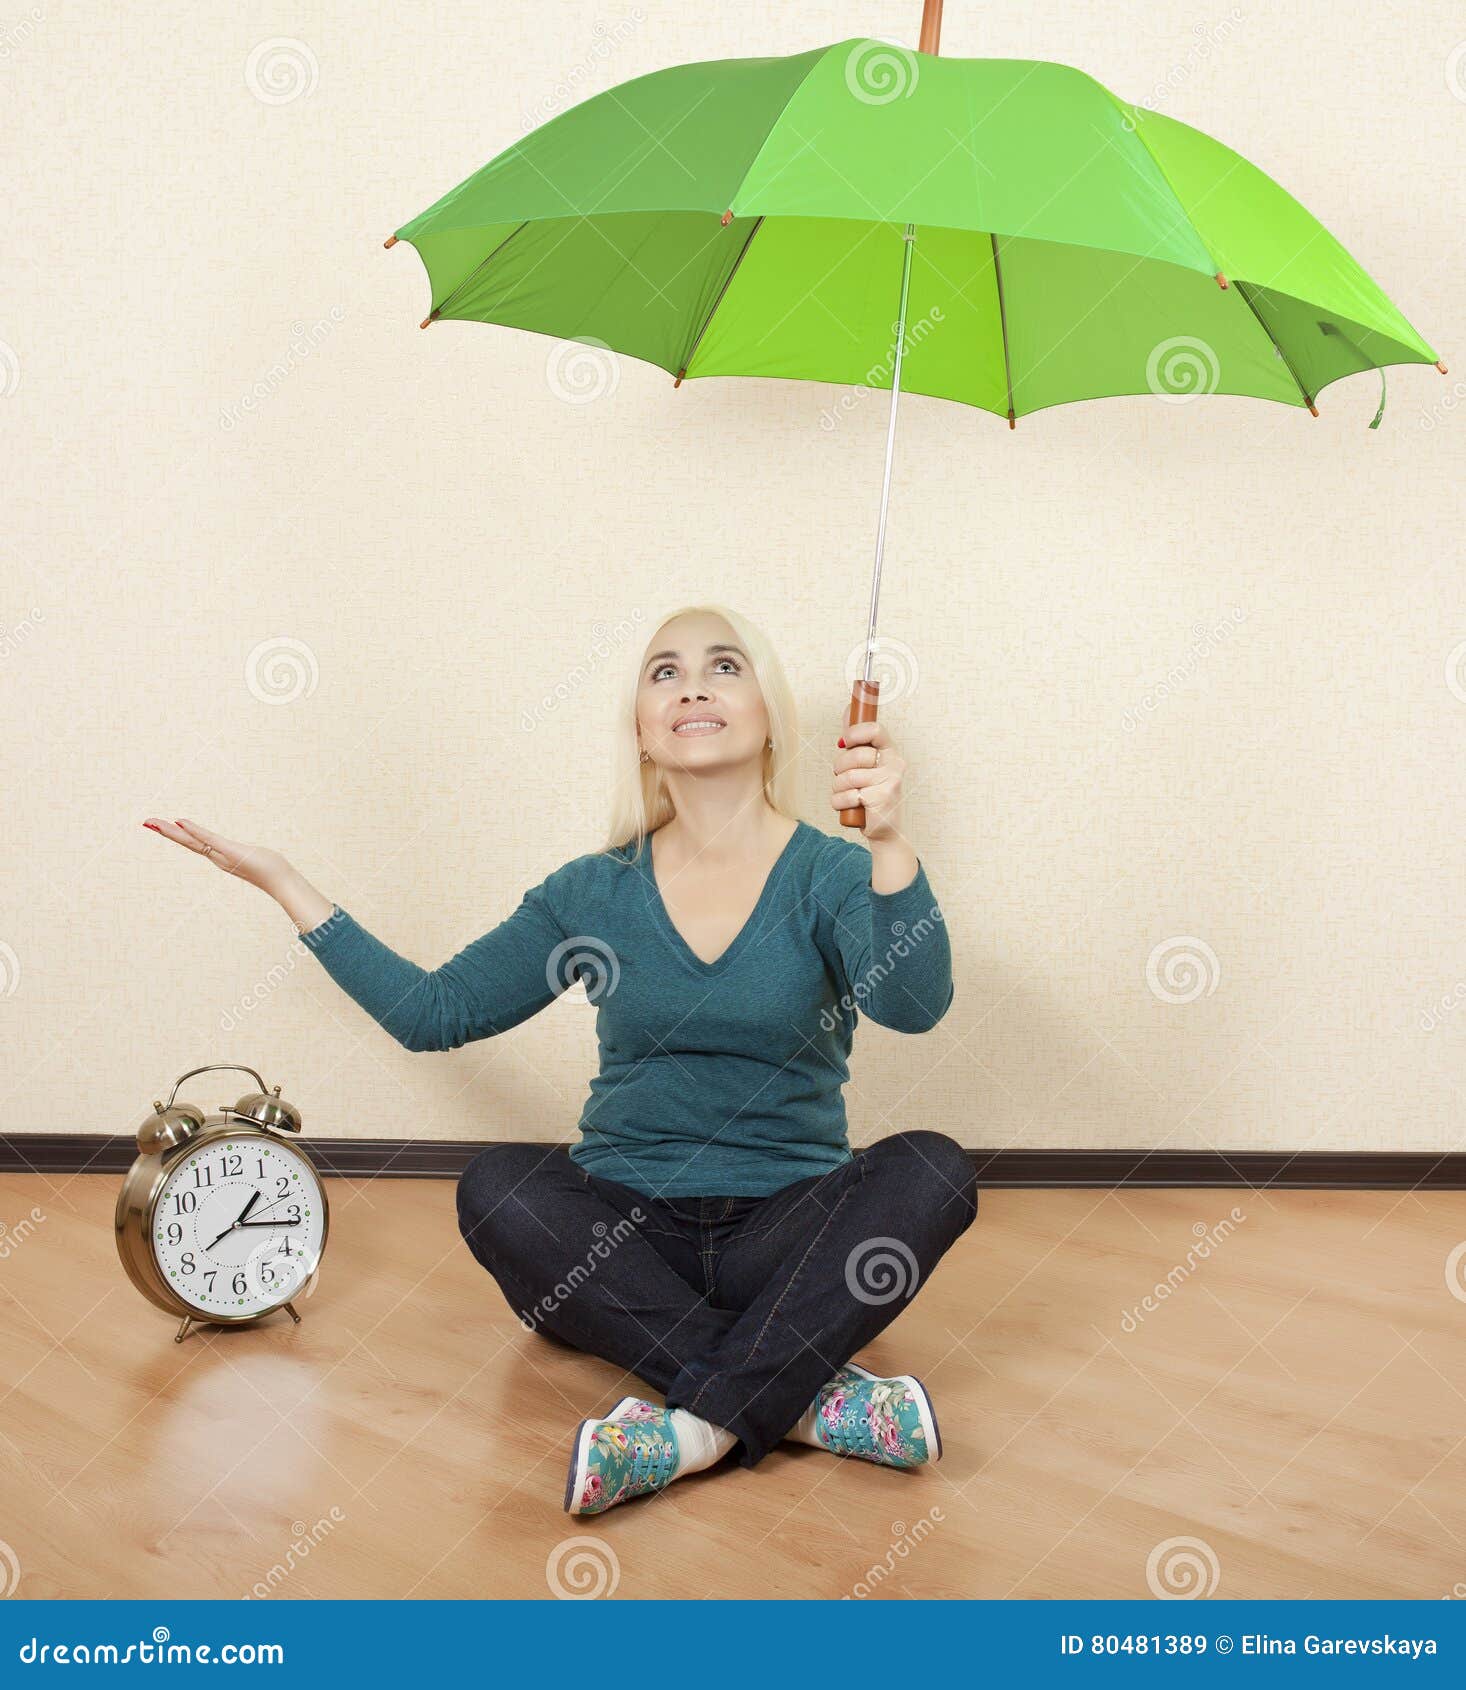 Зонтик сидит. Девушка с зеленым зонтом. Девушка с салатовым зонтом. Человек с зеленым зонтом. Блондинка с зонтиком.